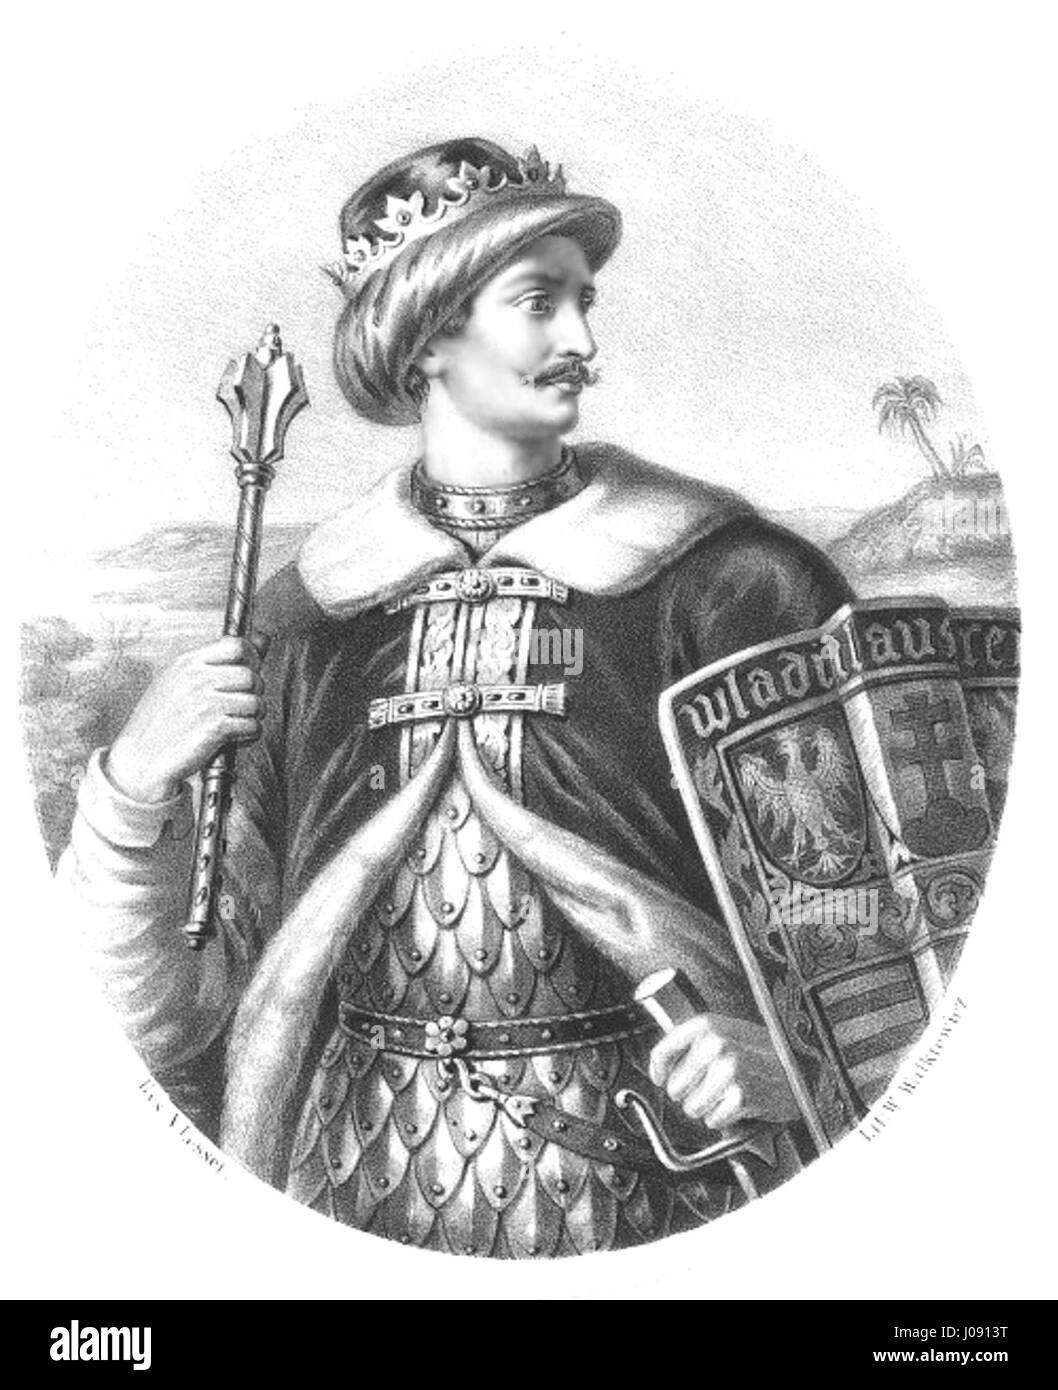 Władysław III Warneńczyk by Aleksander Lesser Stock Photo